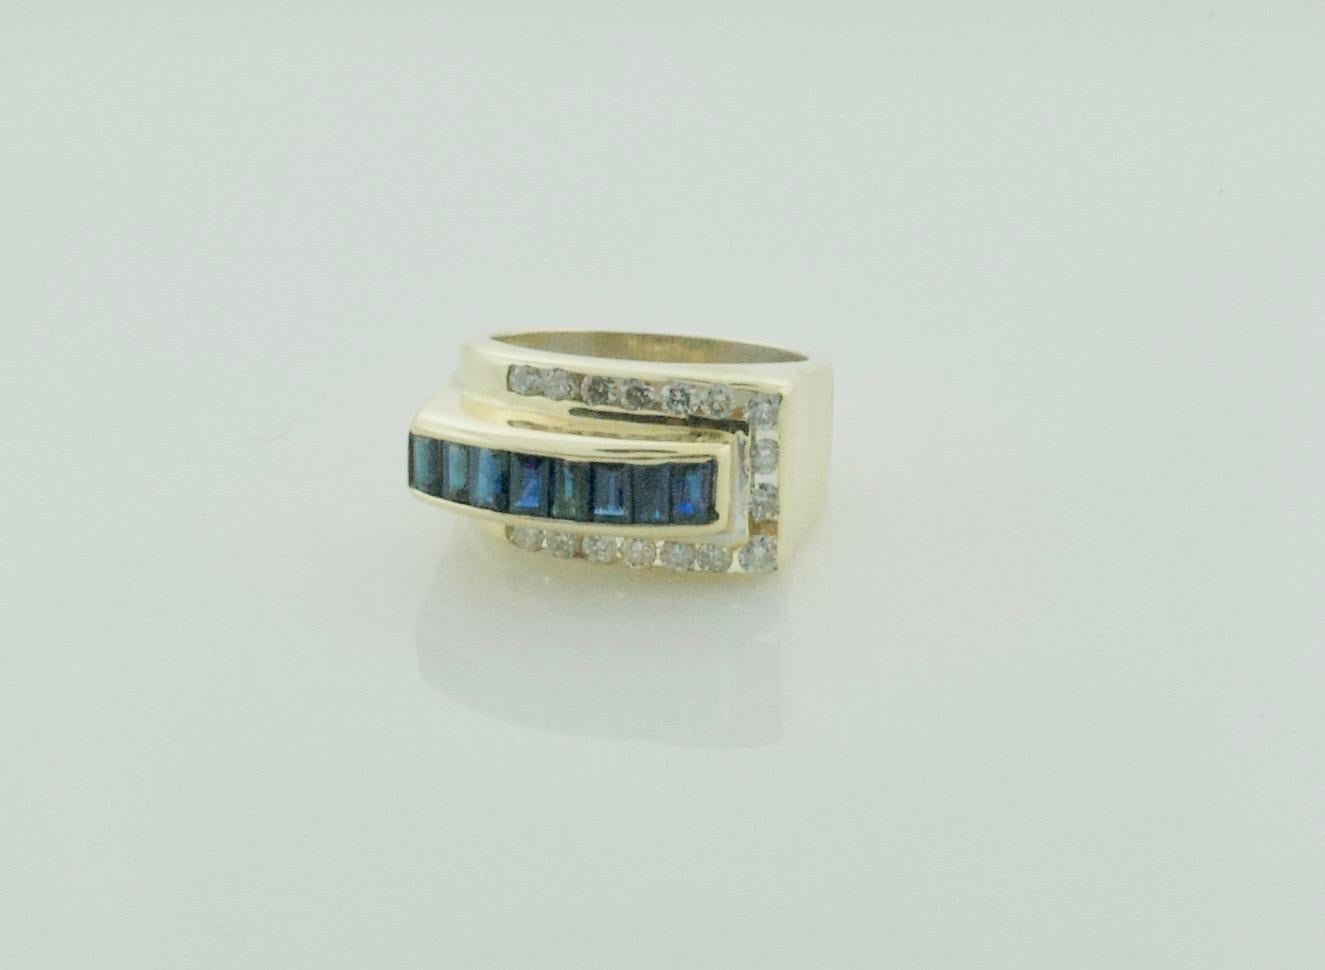 Unser Retro-Saphir- und Diamantring aus Gelbgold ist eine atemberaubende Kombination aus zeitloser Eleganz und zeitgenössischem Charme.

Dieser exquisite Ring besticht durch eine Reihe von Edelsteinen, darunter 16 runde Diamanten im Brillantschliff